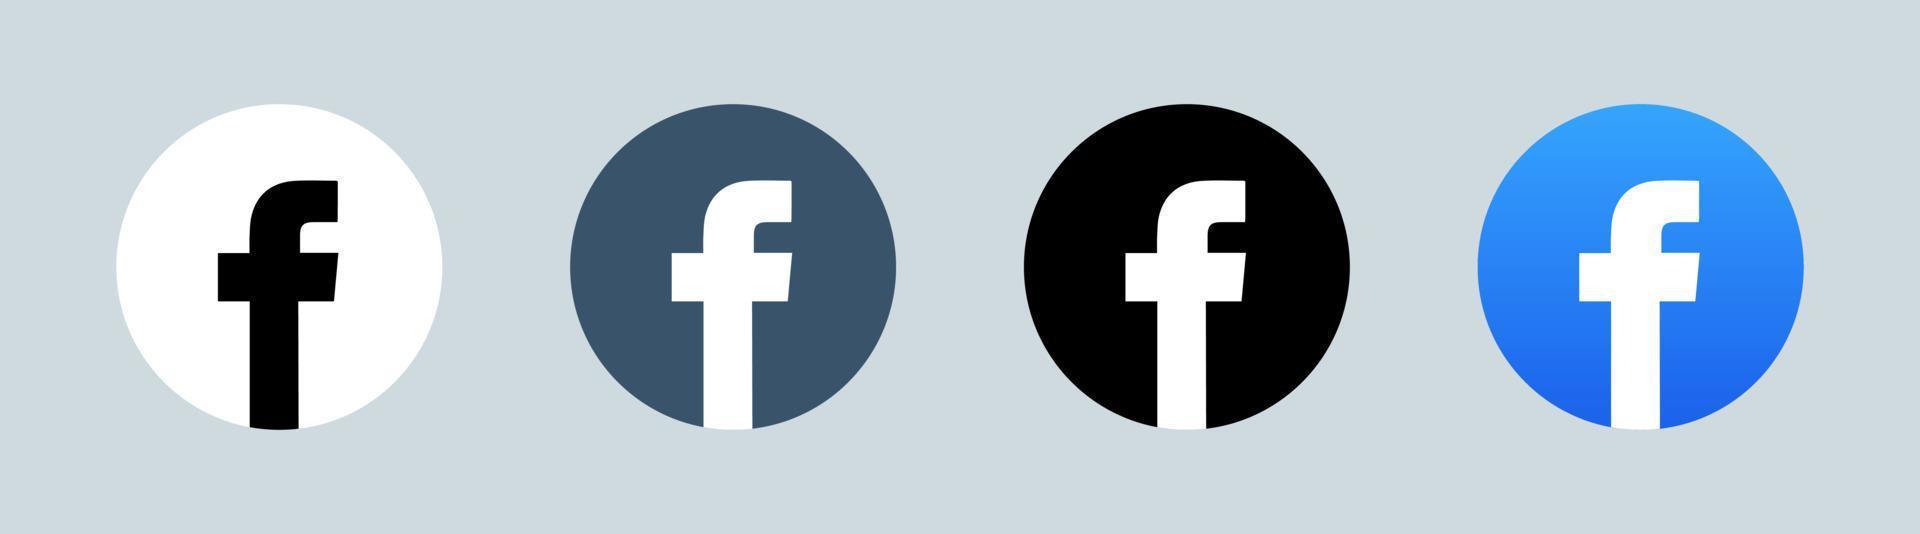 Facebook-Logo in Kreisform. beliebtes Social-Media-Logo. vektor